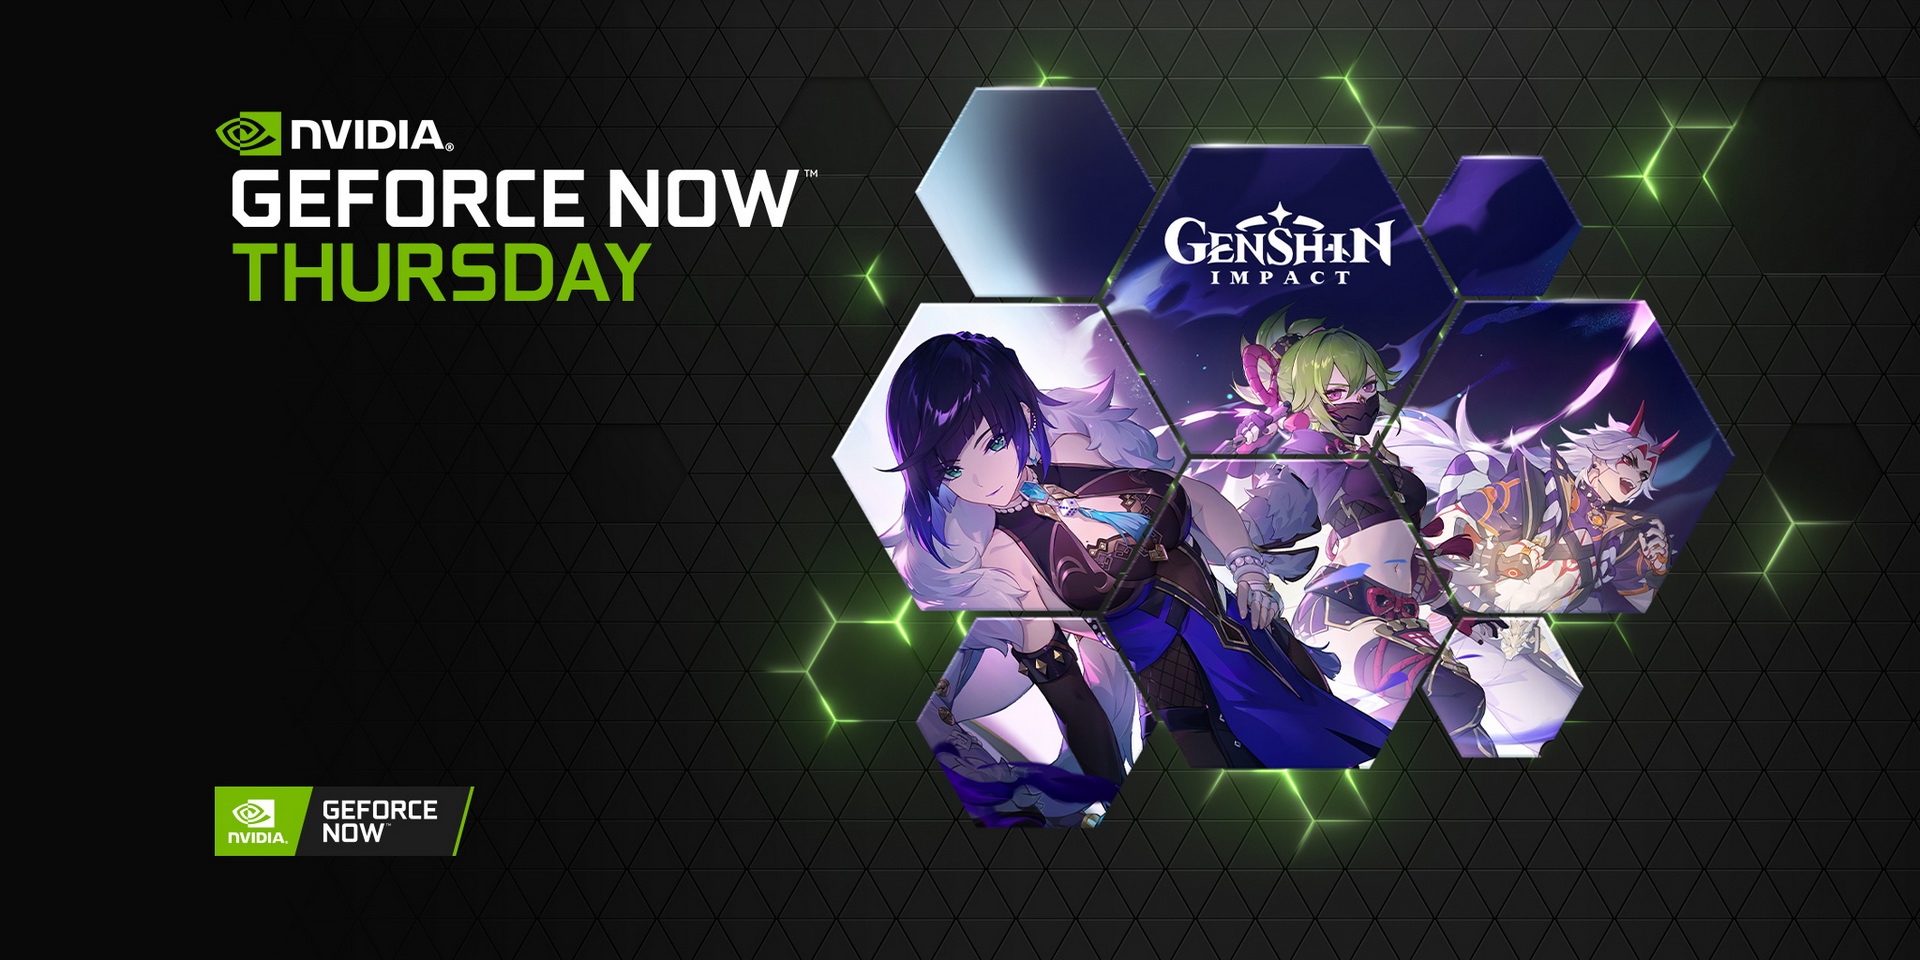 Genshin Impact wśród sześciu nowych gier w usłudze GeForce NOW! Kiedy tytuł będzie dostępny?